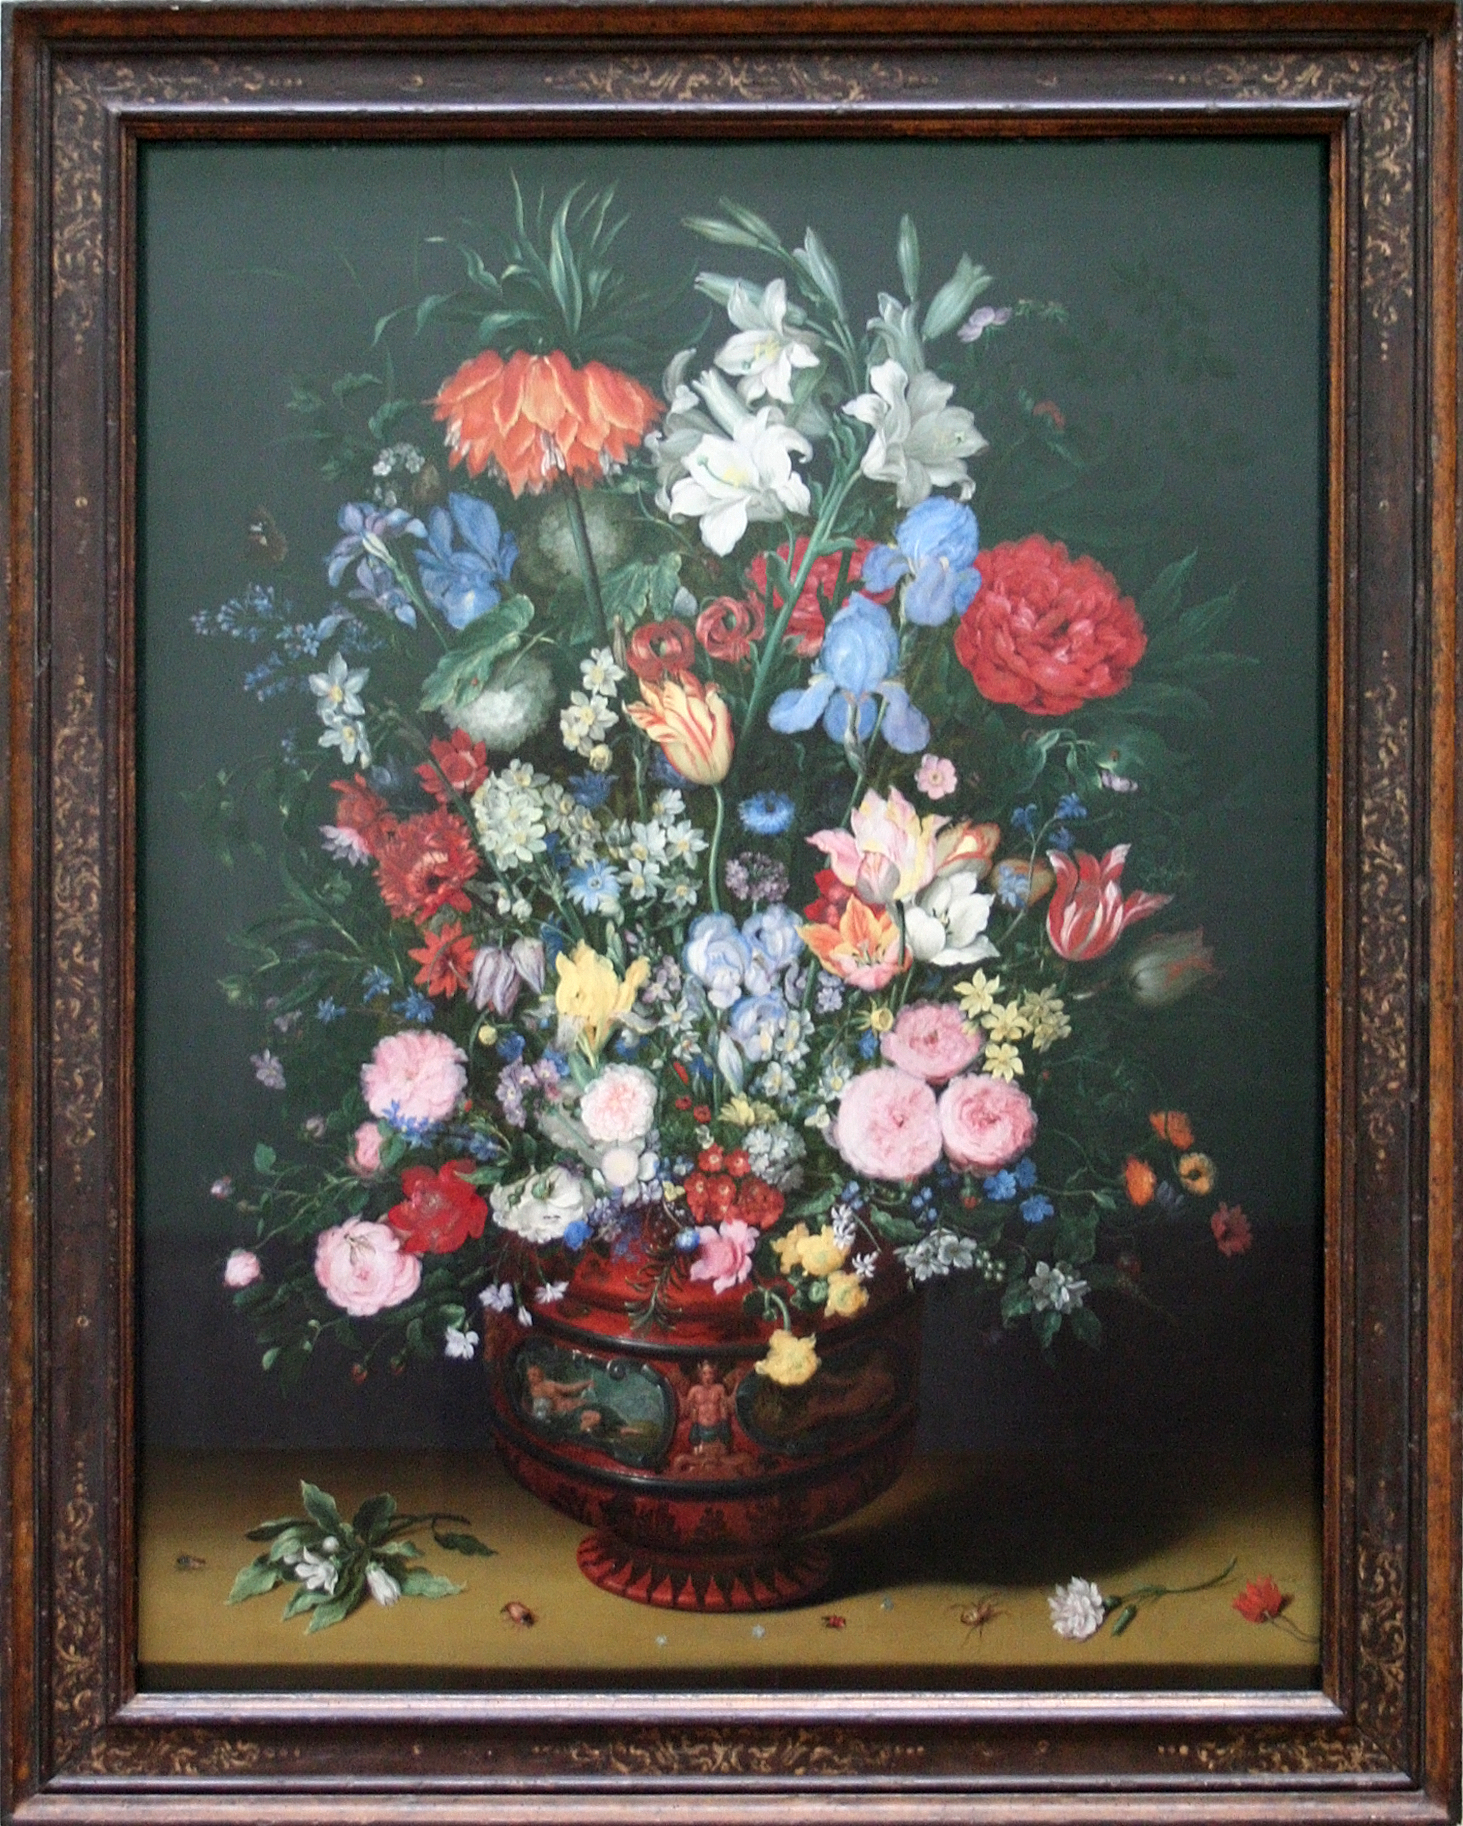 Rondlopen eb onderwerp File:Jan Brueghel - Bloemen in een vaas.JPG - Wikimedia Commons